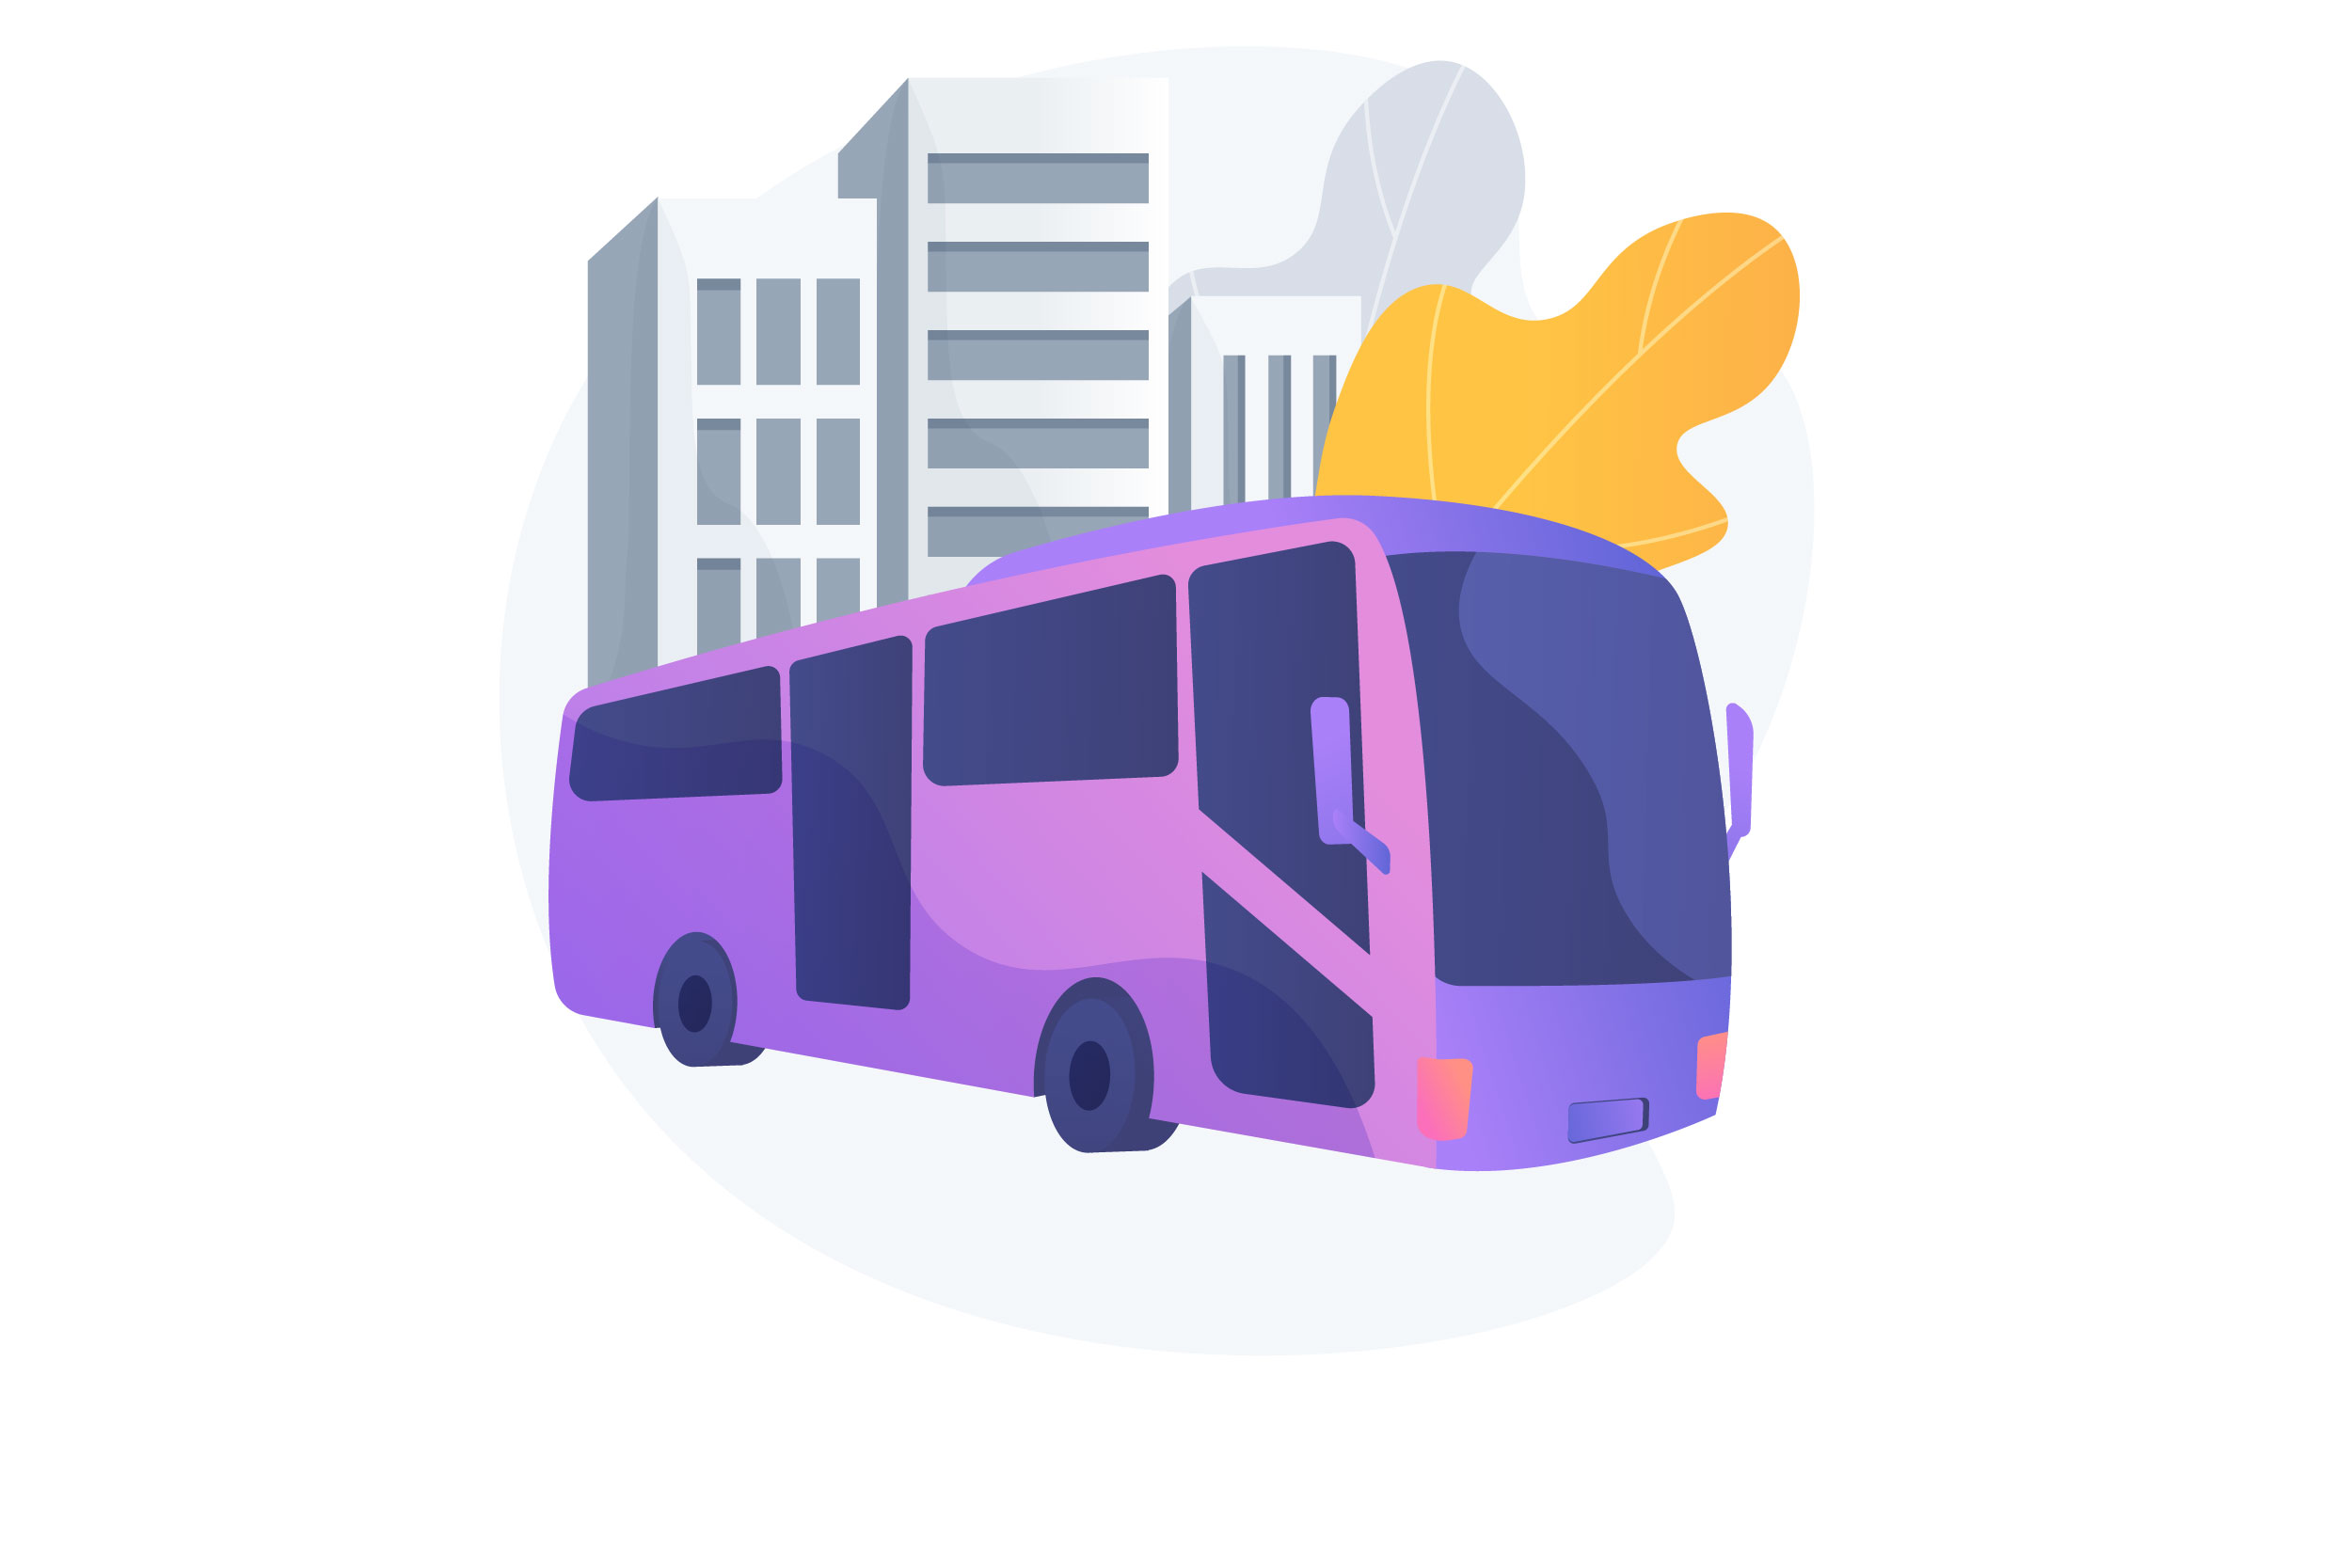 Ilustração de ônibus em tons de azul